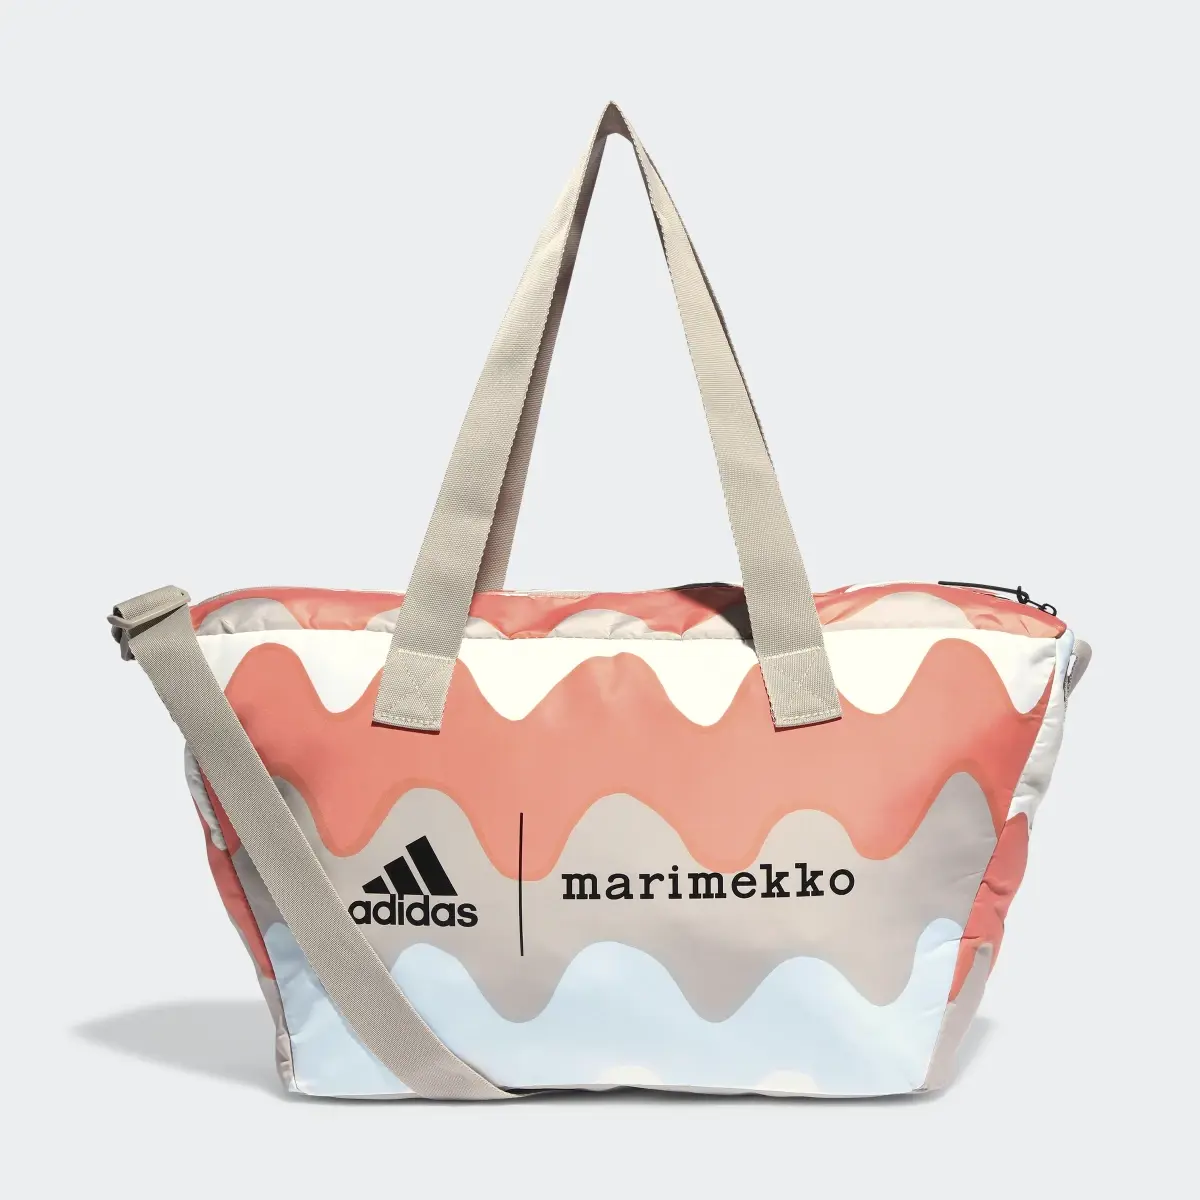 Adidas x Marimekko Shopper Designed 2 Move Training Backpack. 2